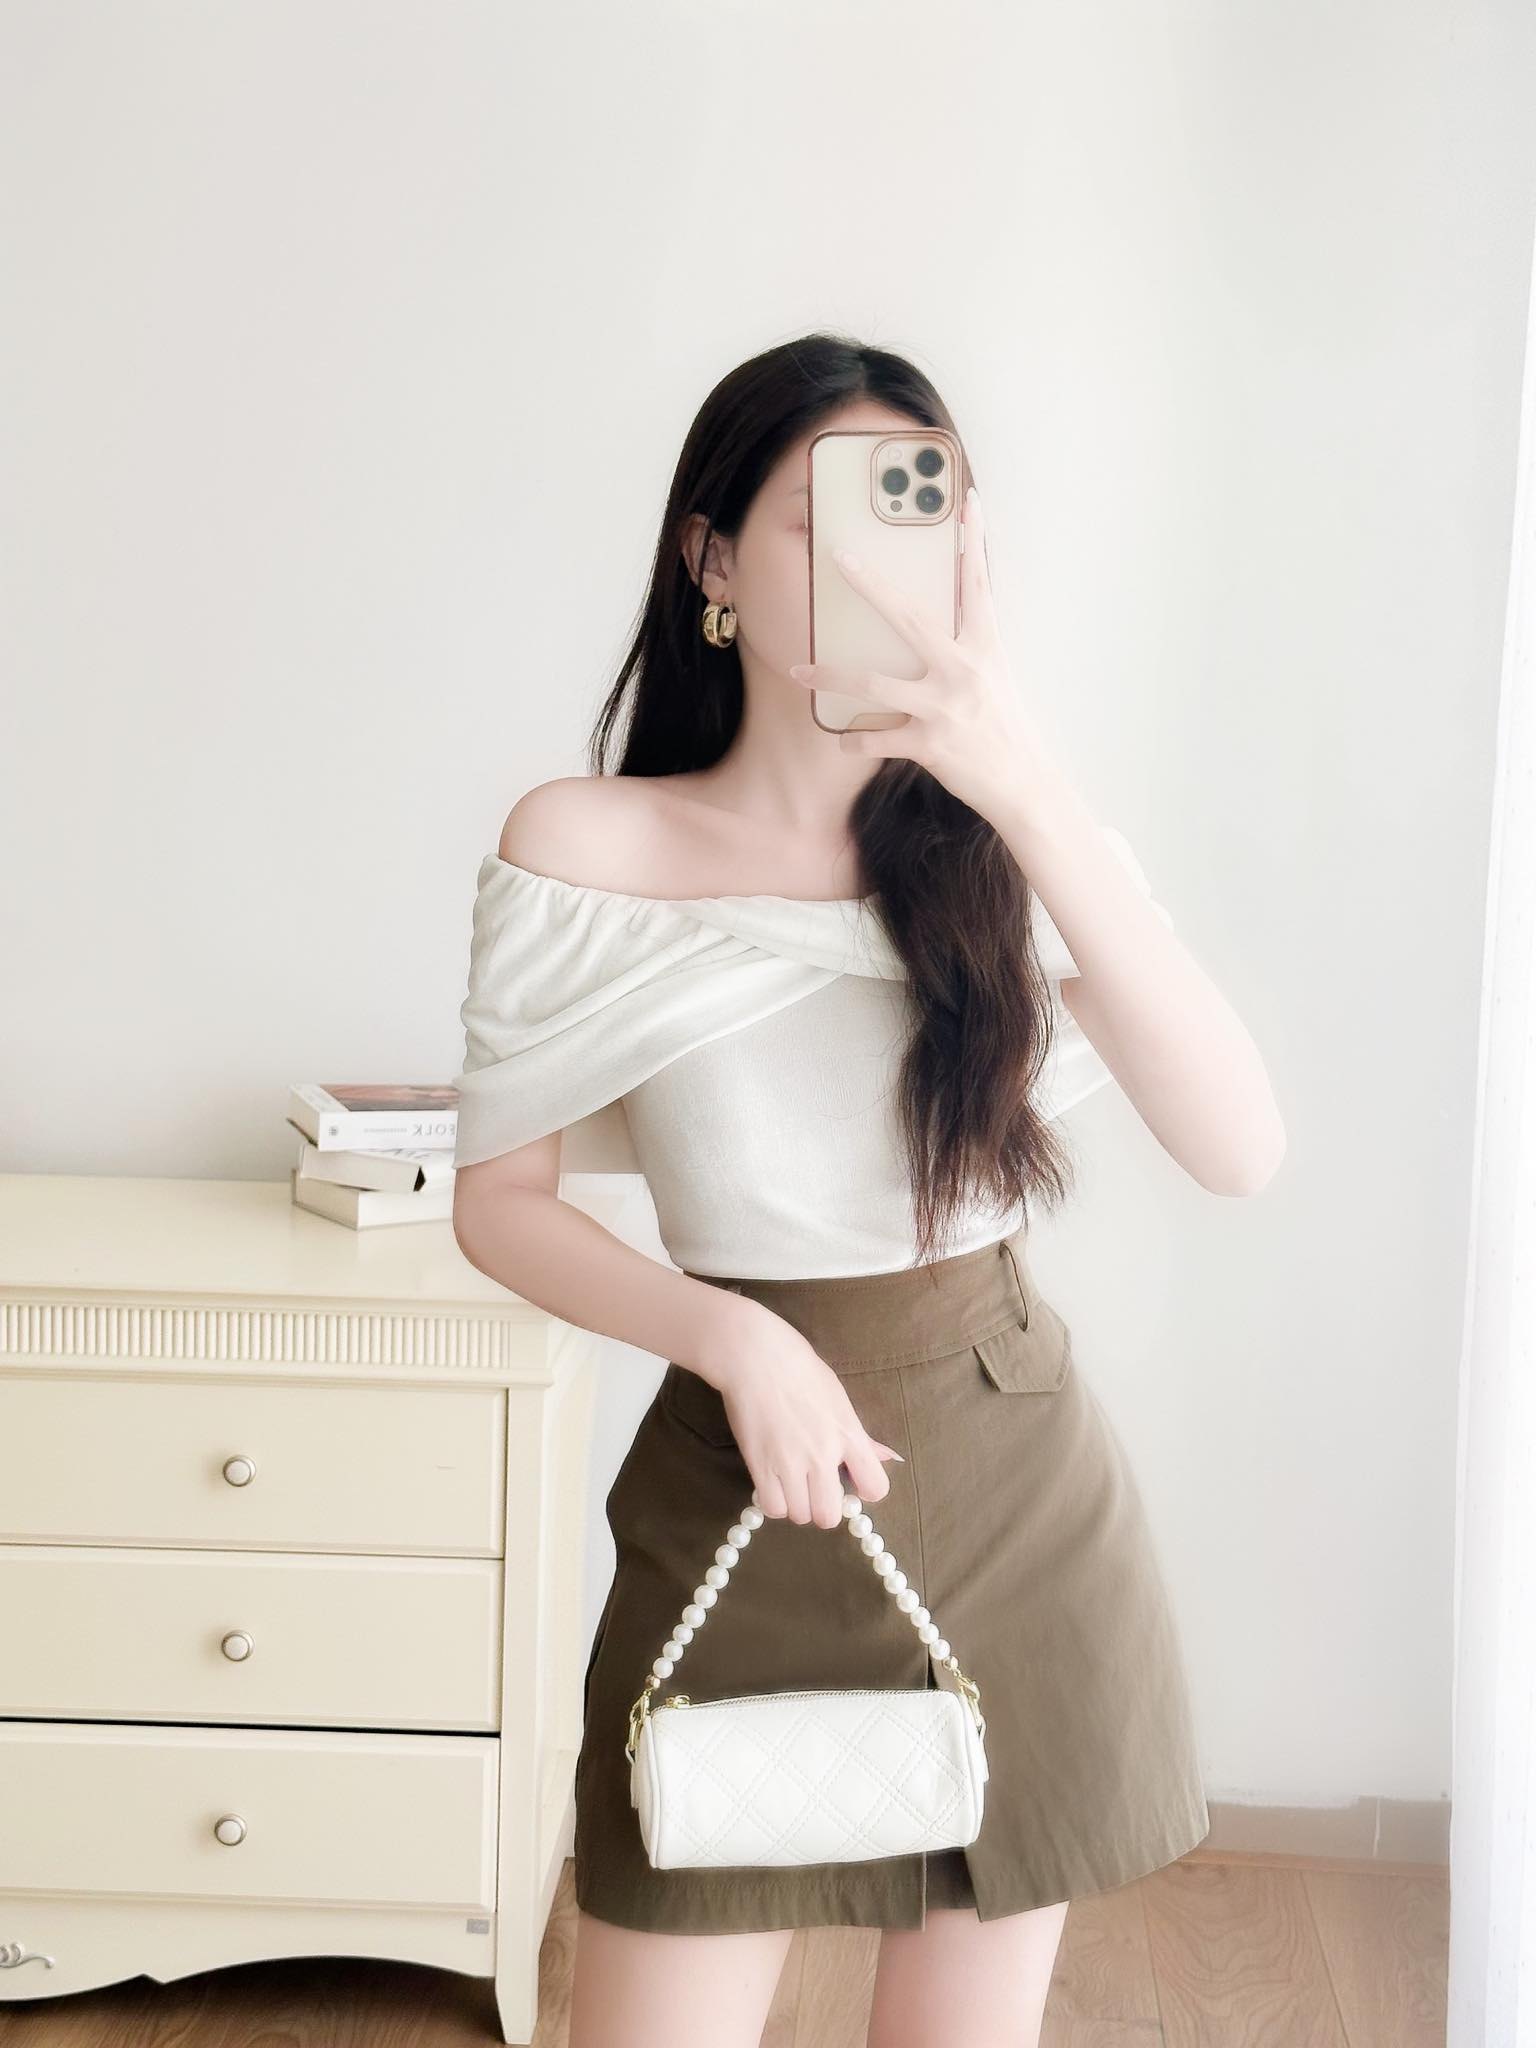 NUZIRO Chân Váy Chữ A Lưng Cao Có Túi Thời Trang Hàn Quốc Cho Nữ - Tìm  Voucher